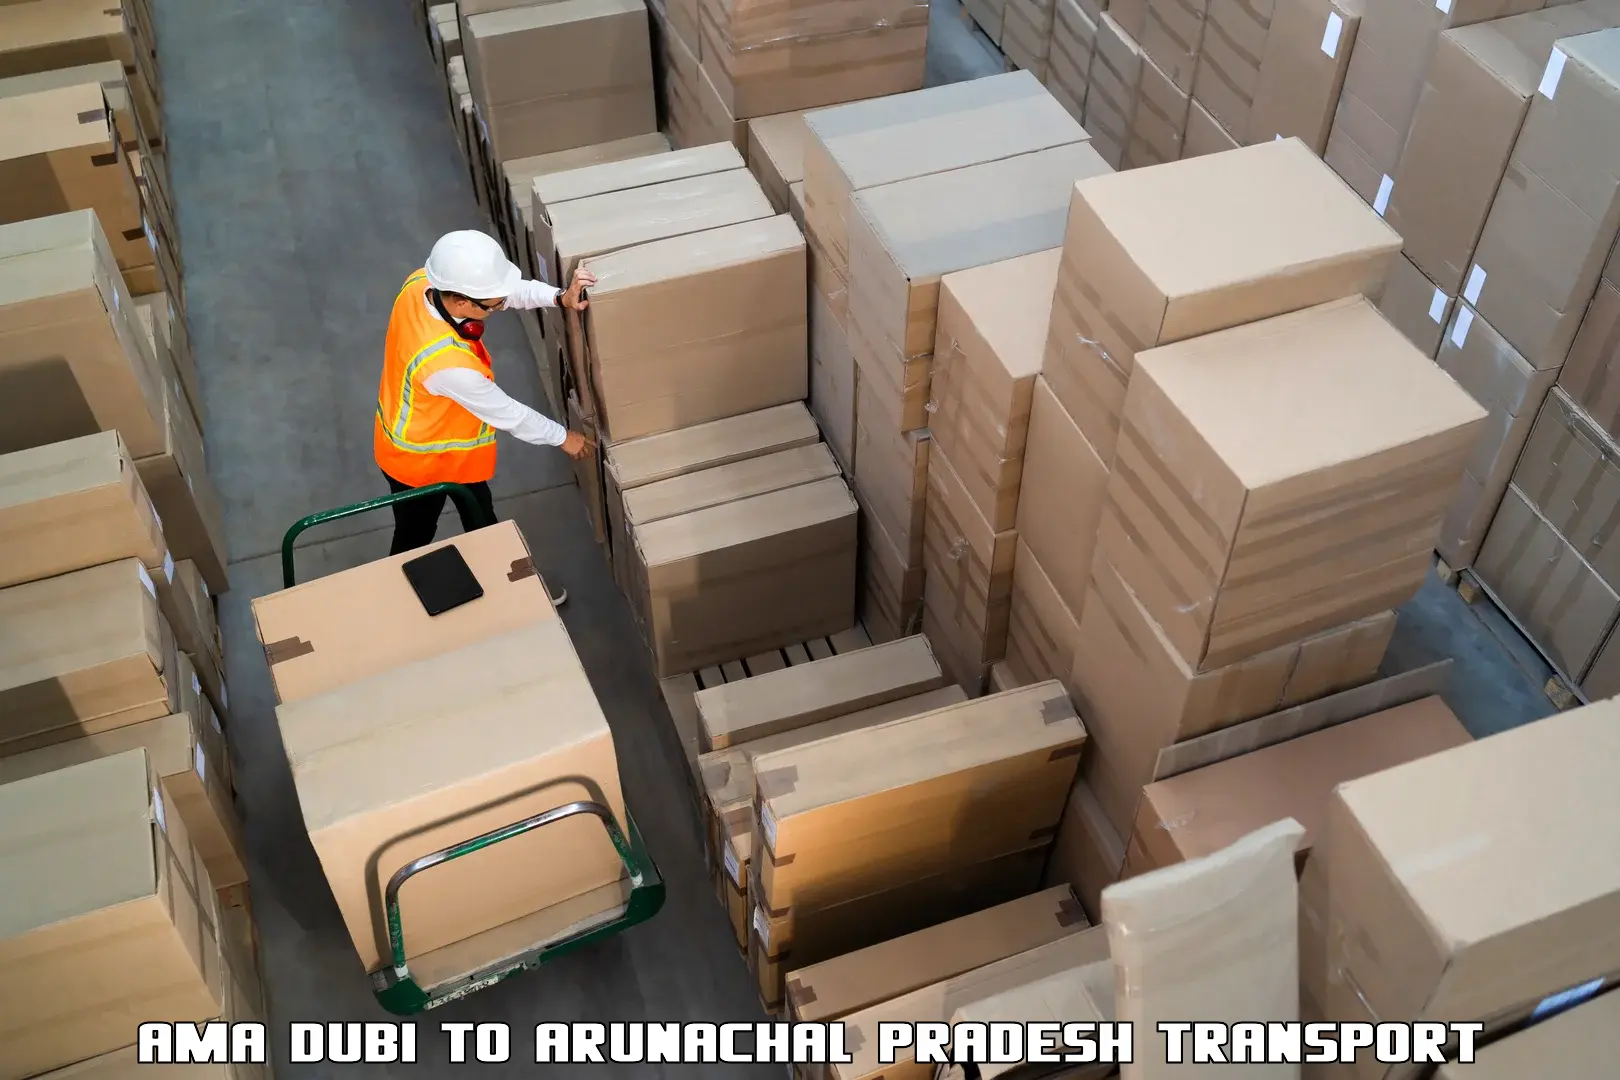 Cargo transport services Ama Dubi to Lower Subansiri